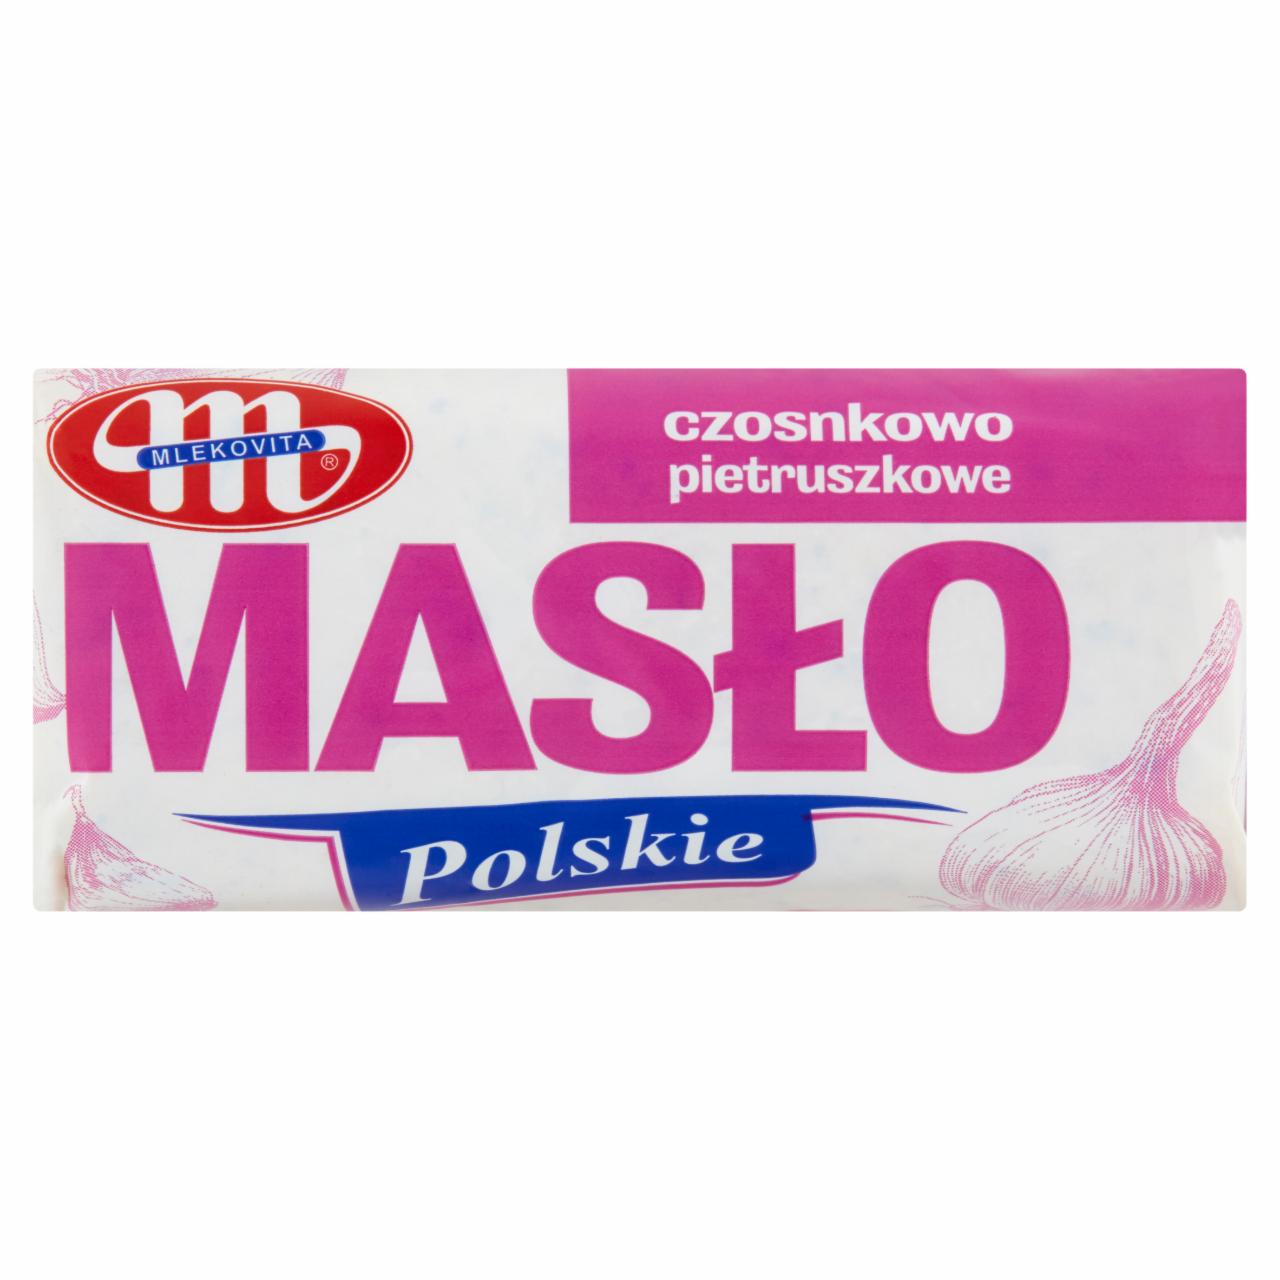 Zdjęcia - Mlekovita Masło Polskie czosnkowo pietruszkowe 80 g